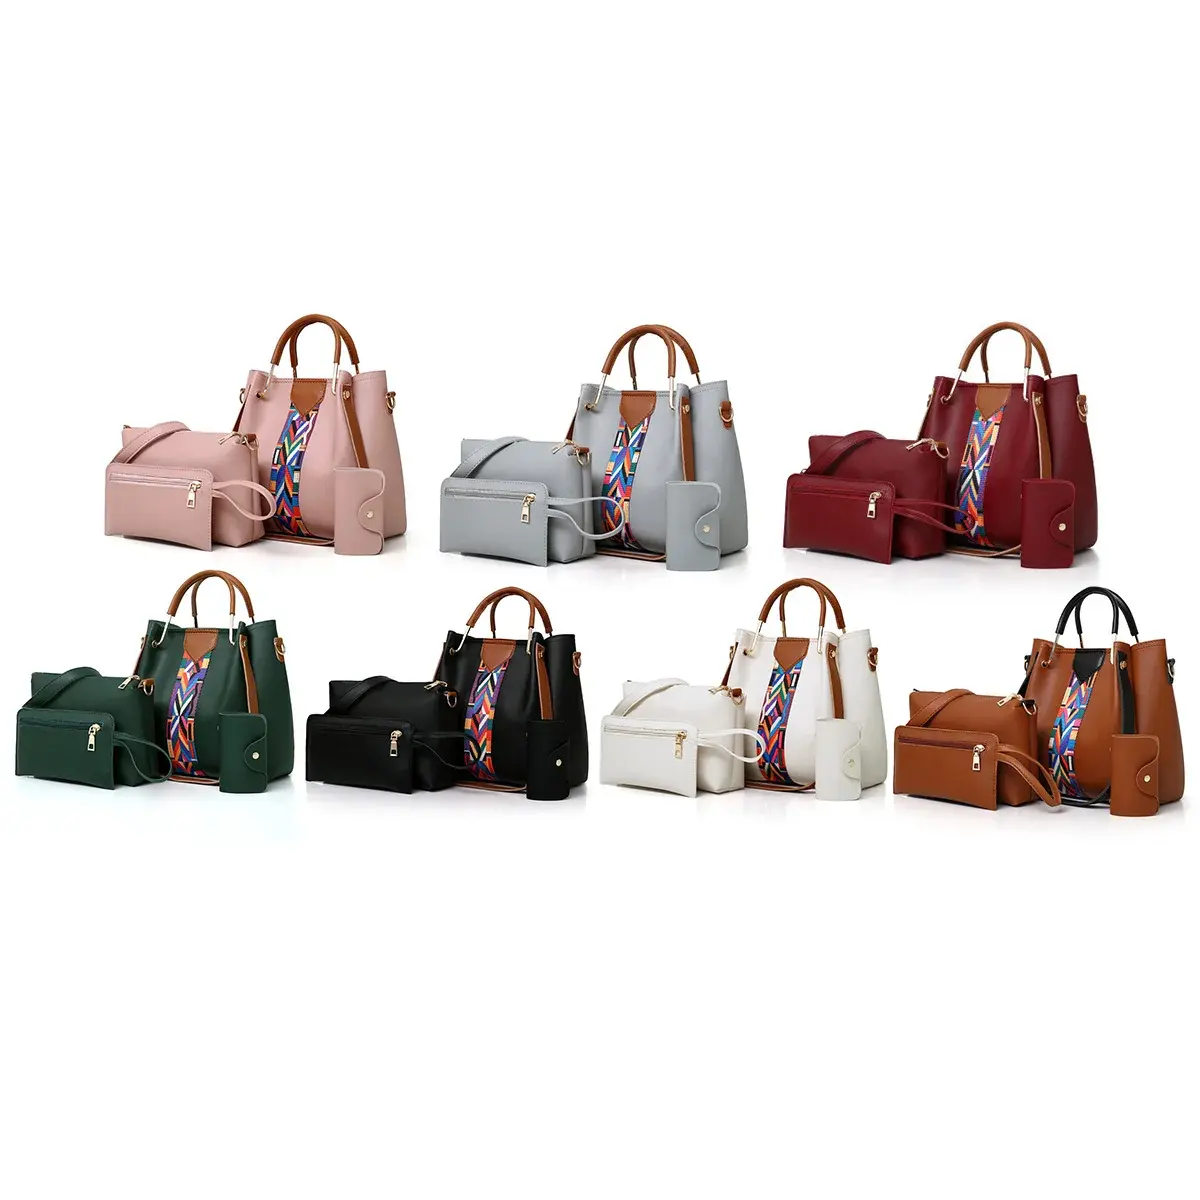 RU tas tangan wanita desain baru kualitas baik tas tangan wanita tren mode tas wanita tas tangan untuk wanita